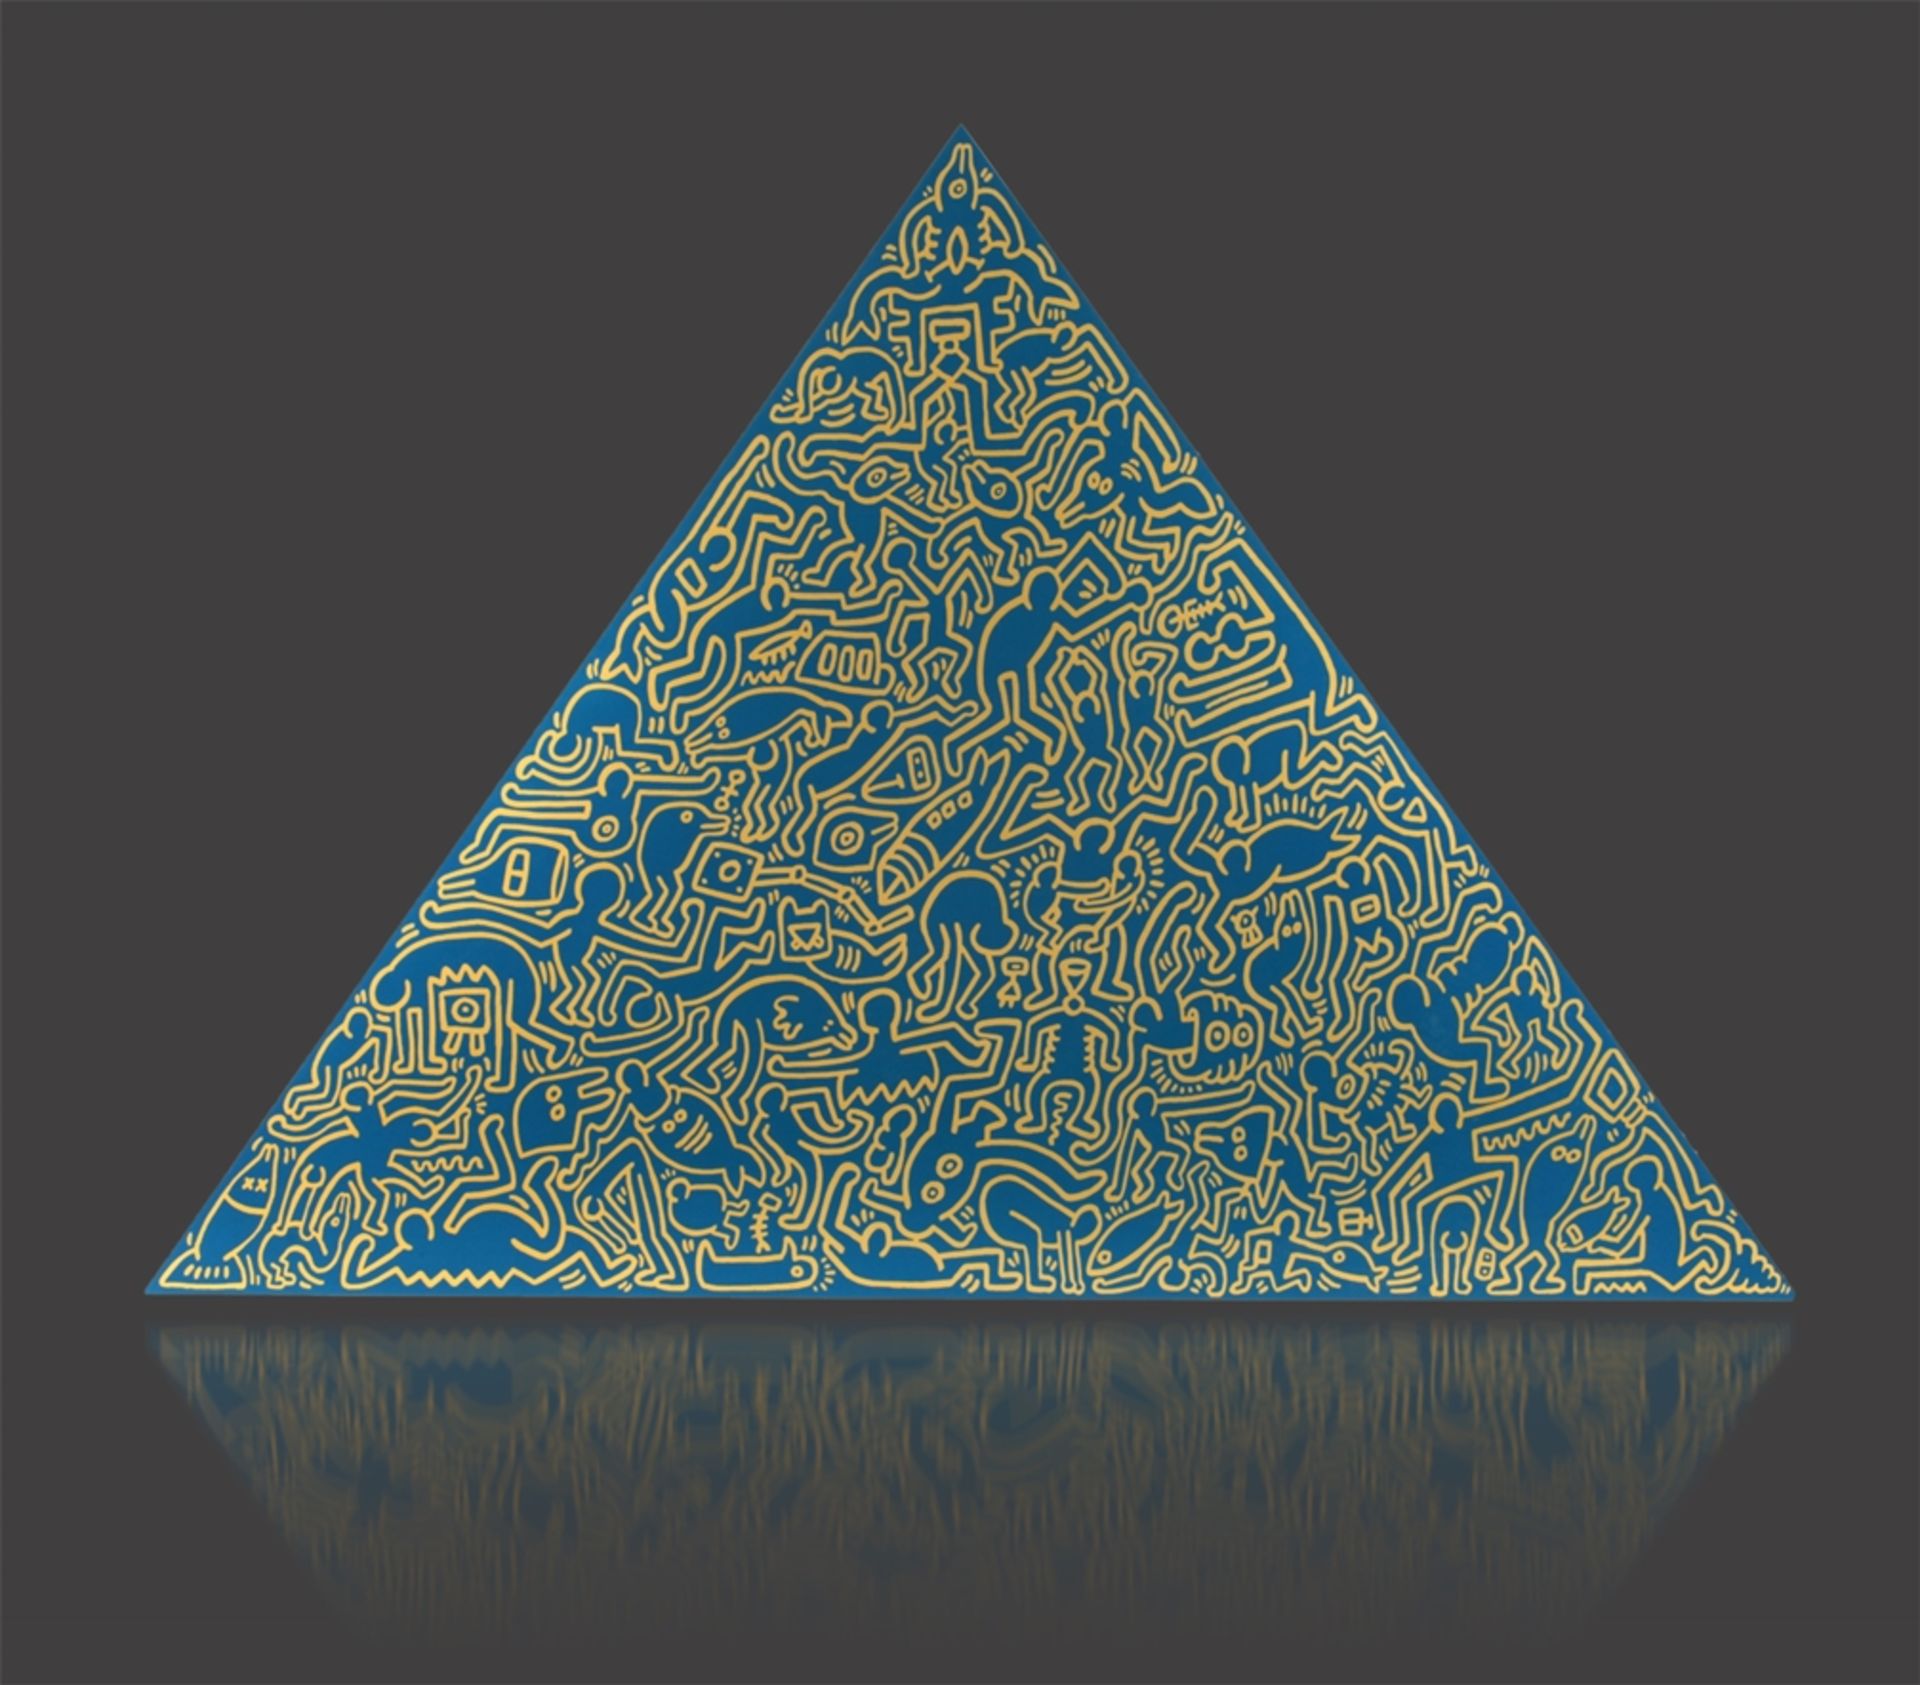 Keith Haring, “Pyramid”dreieckige Aluminiumplatte, vollflächig mit für den Künstler typischen